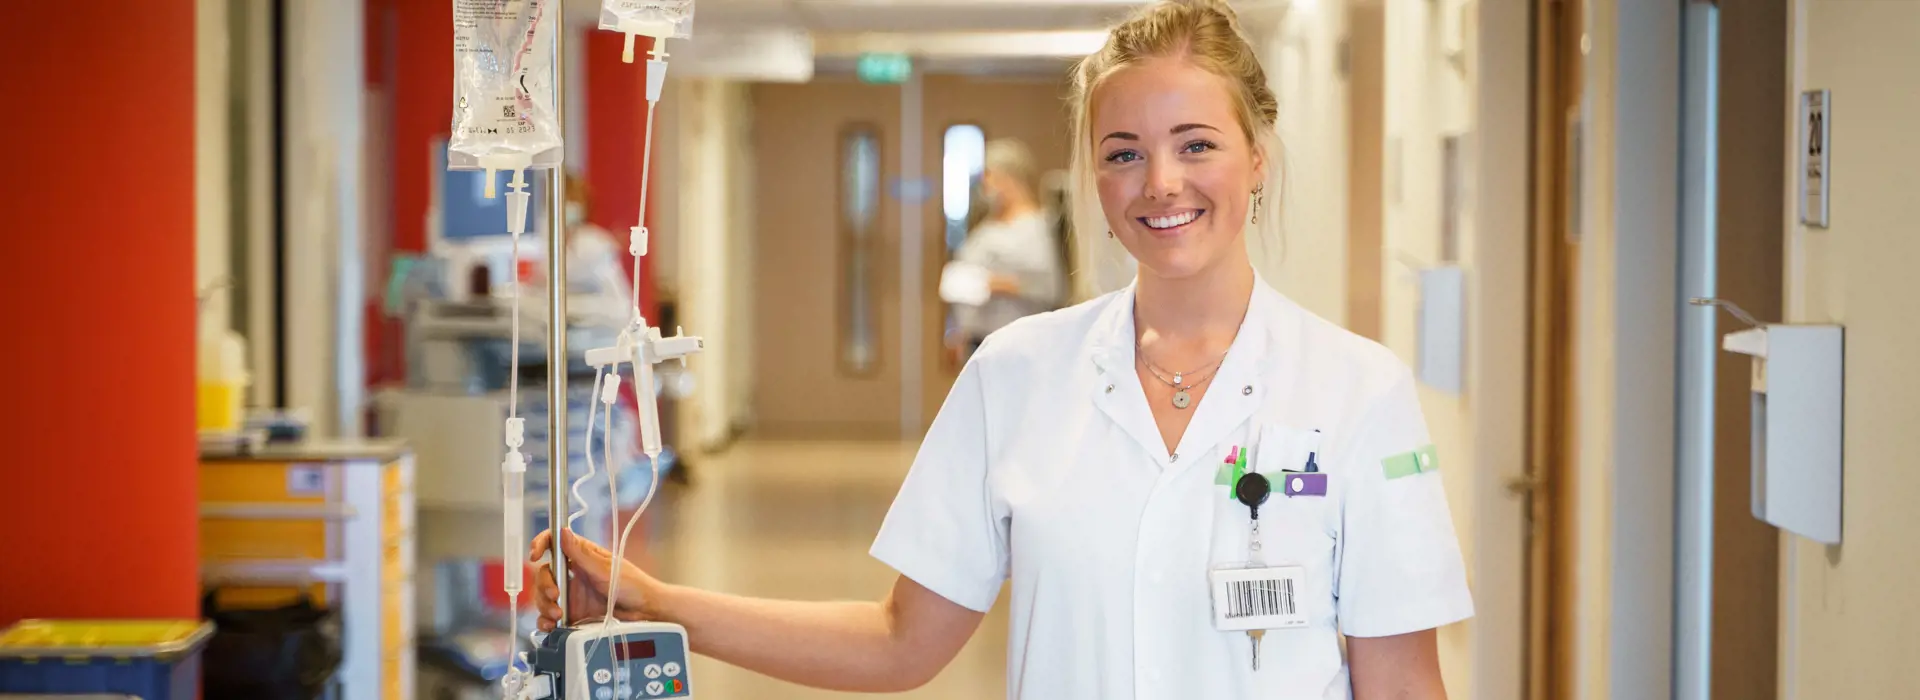 Vacature - Dialyseverpleegkundige in opleiding met ziekenhuiservaring 